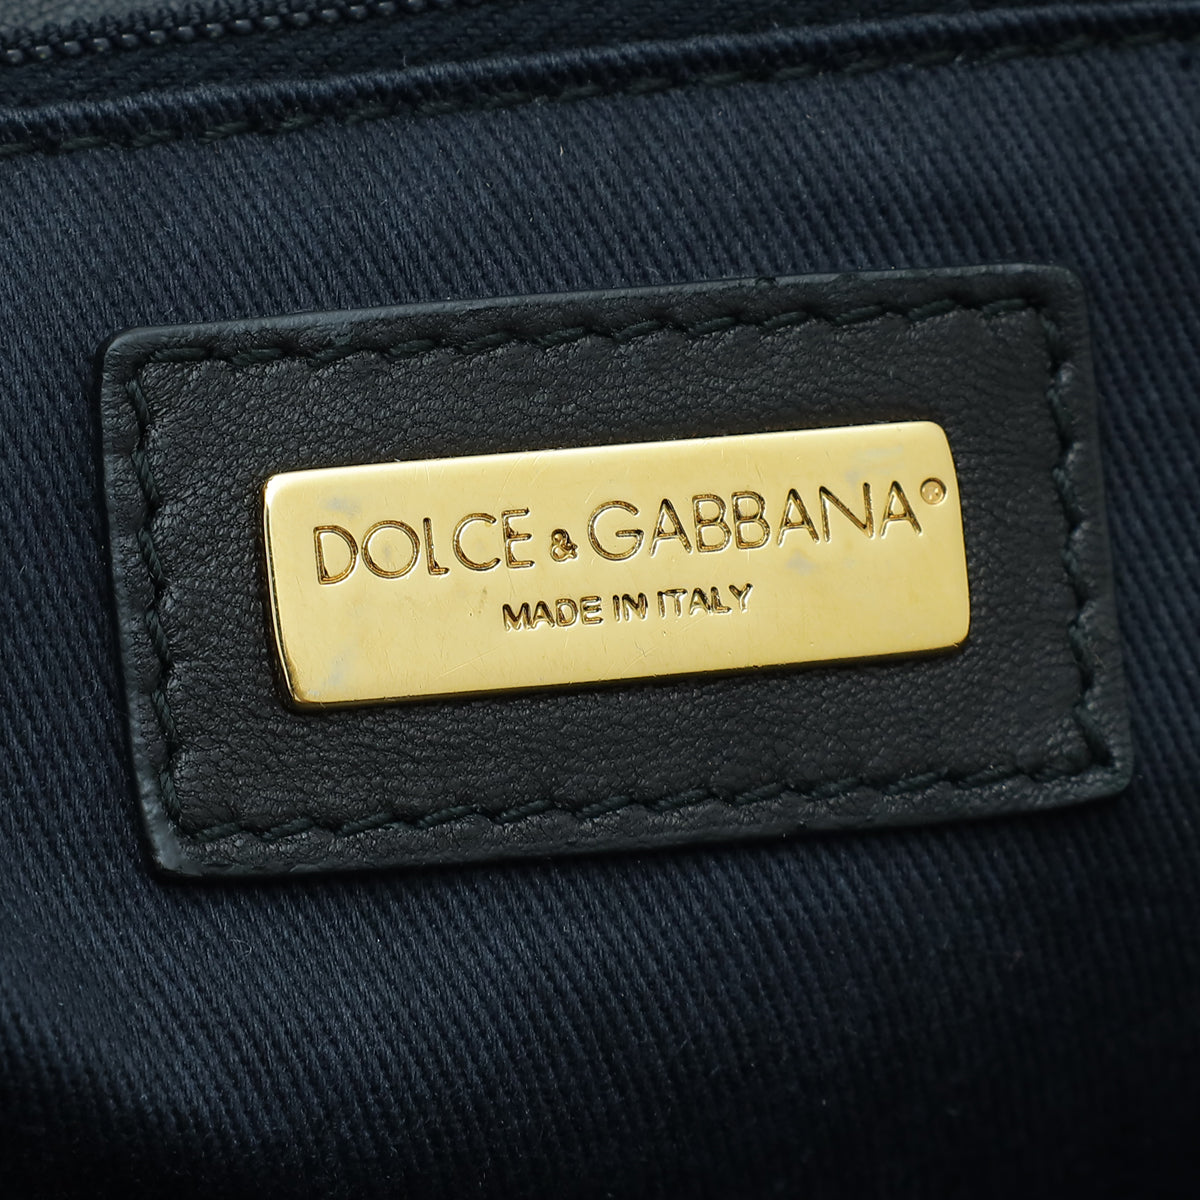 Dolce & Gabbana Multicolor Sicily Sequins Large Soft Bag